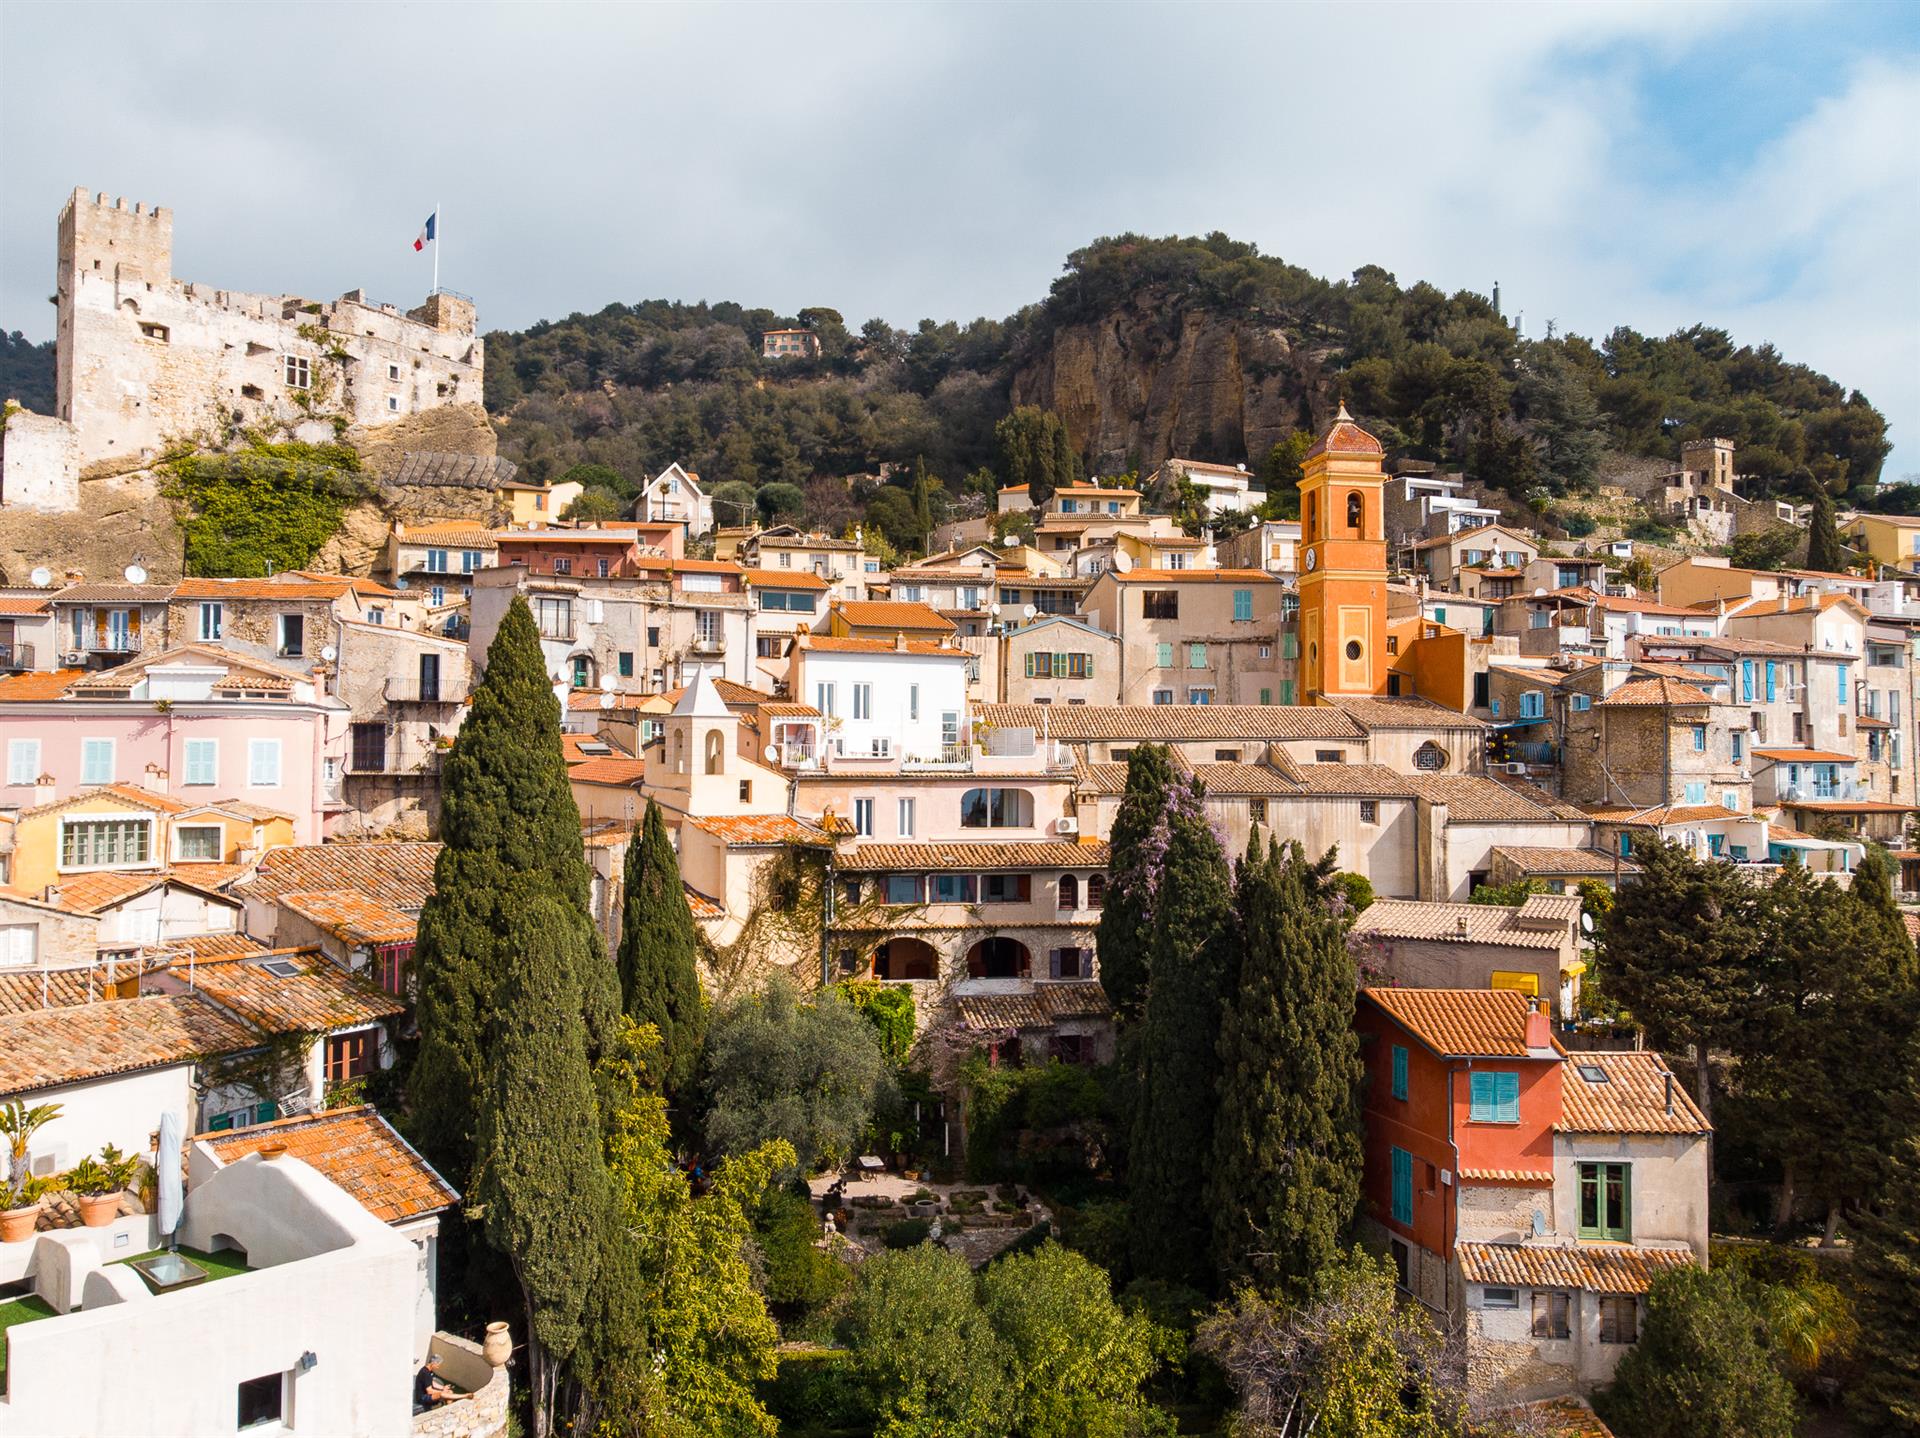 L'aumônerie, historisch landgoed in het hart van Roquebrune.